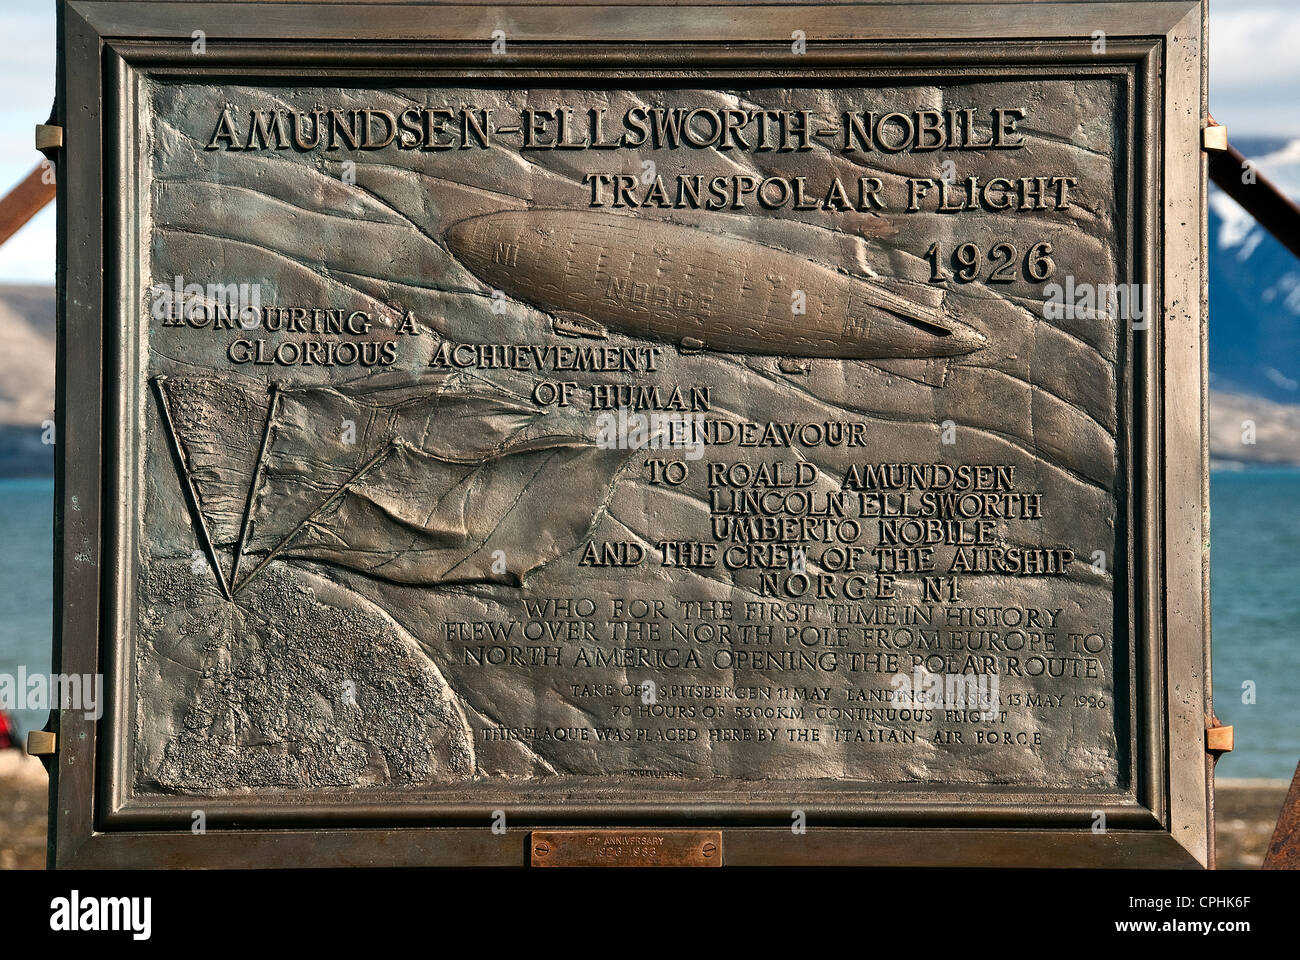 Amundsen-Ellsworth-Nobile transpolaren Flug 1926 Ny-Ålesund-Spitzbergen-Norwegen Stockfoto